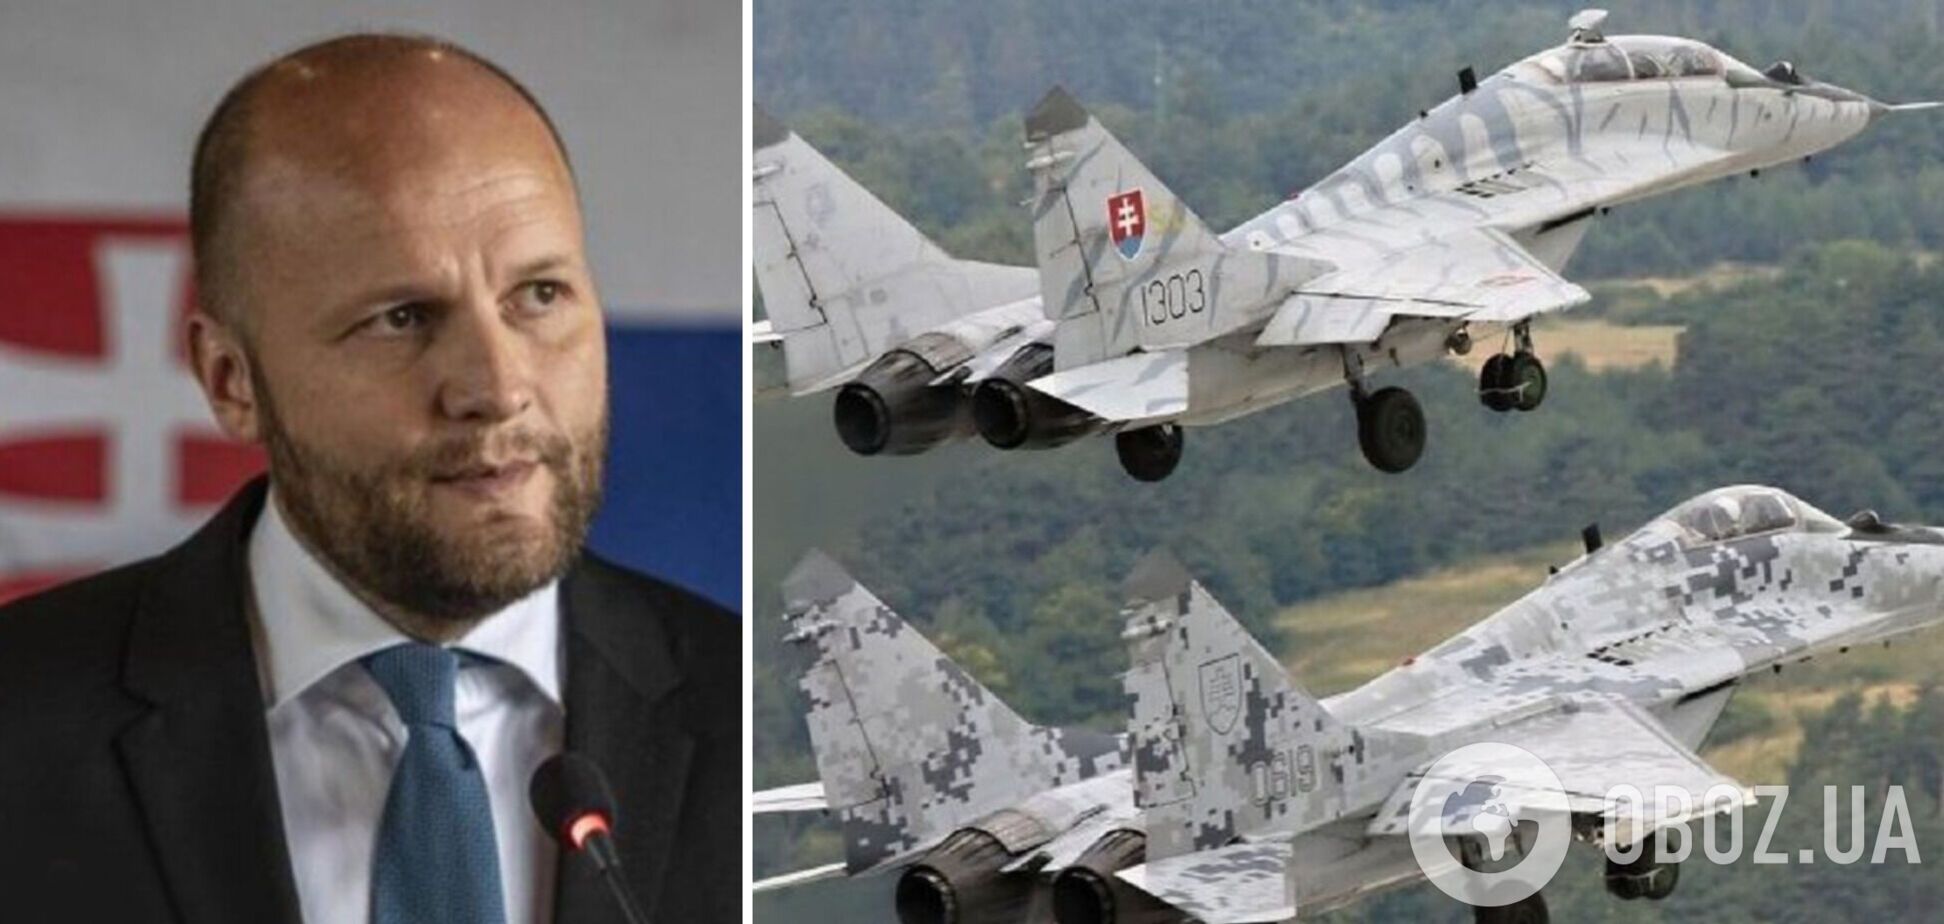 Словакия готова передать Украине истребители МиГ-29, — министр обороны